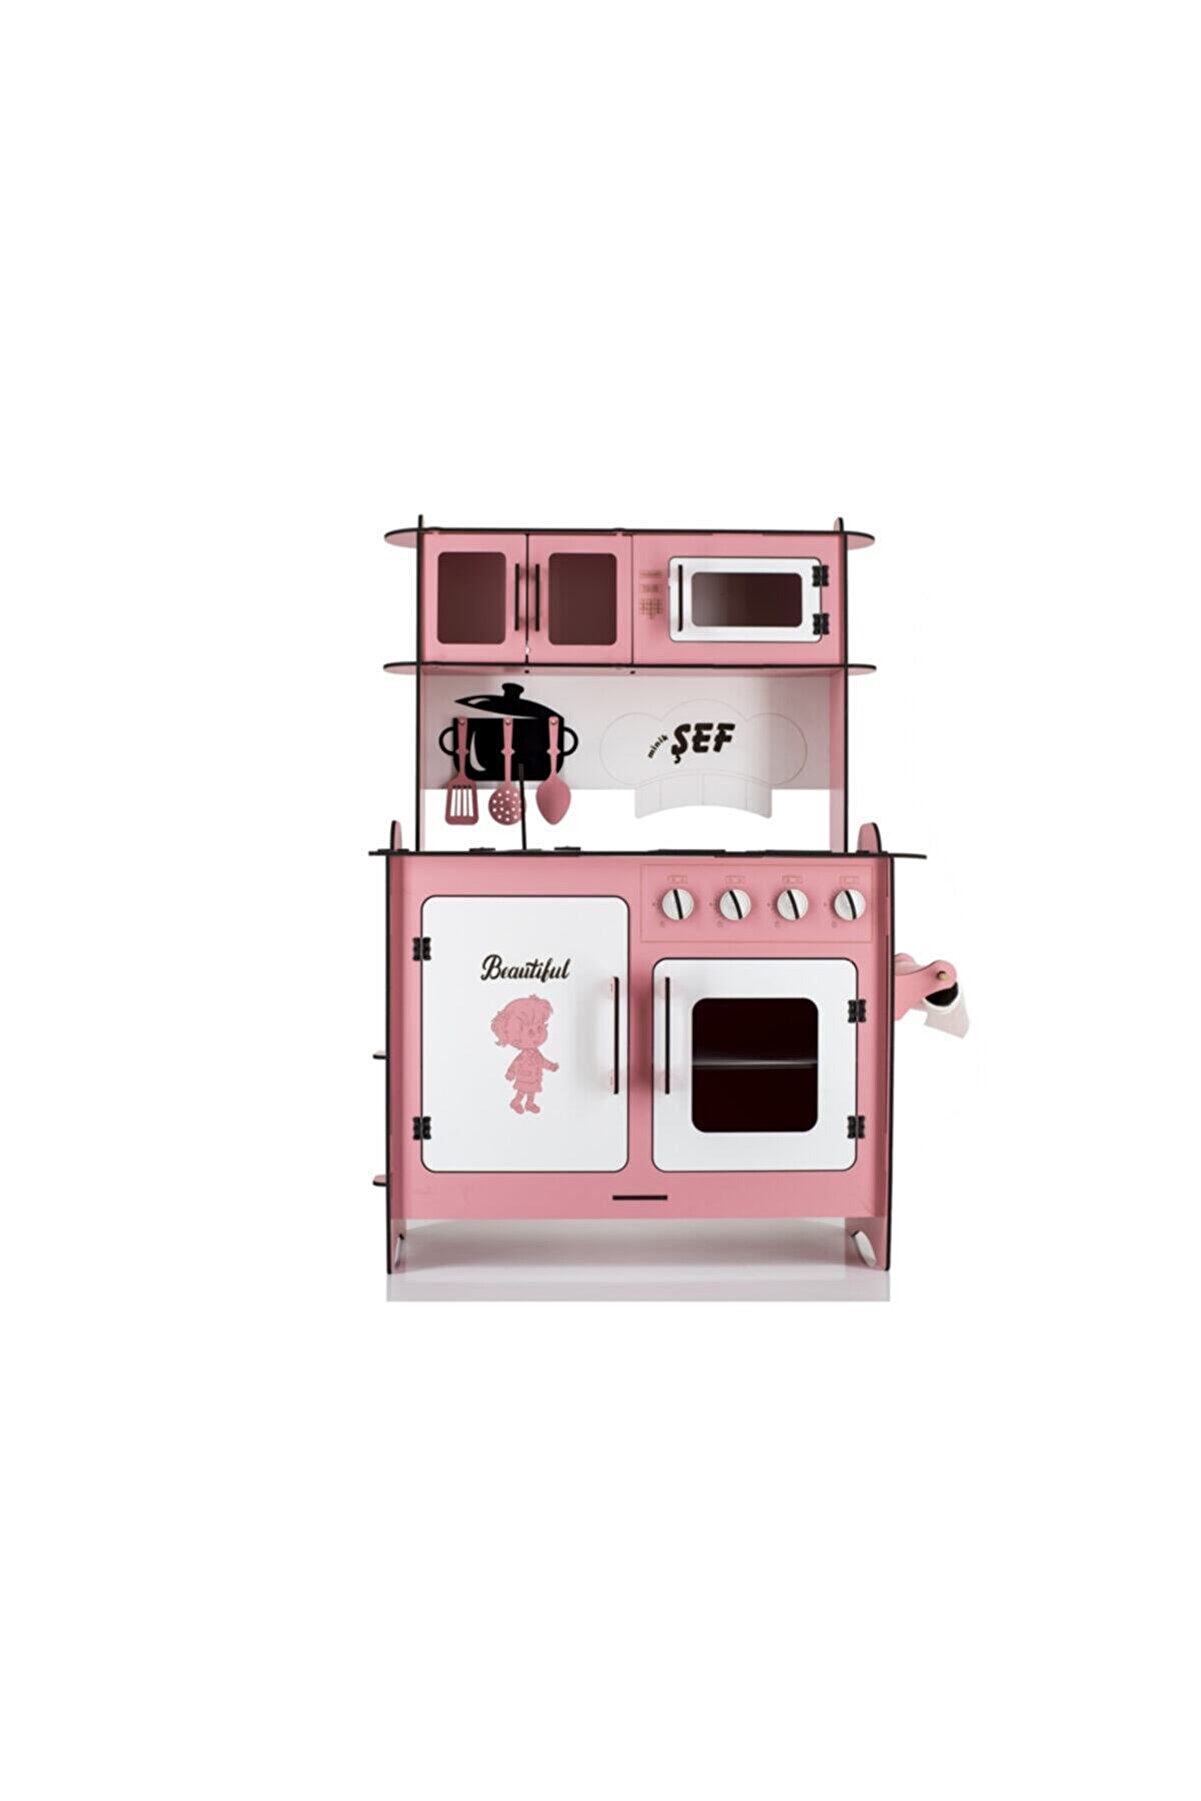 EMRİN AHŞAP OYUNCAK VE HEDİYELİK EŞYA Sürpriz Hediyeli Emrin Ahşap Oyuncak -büyük Boy 6mm Pembe Renk Evcilik Oyuncak Mutfak Seti